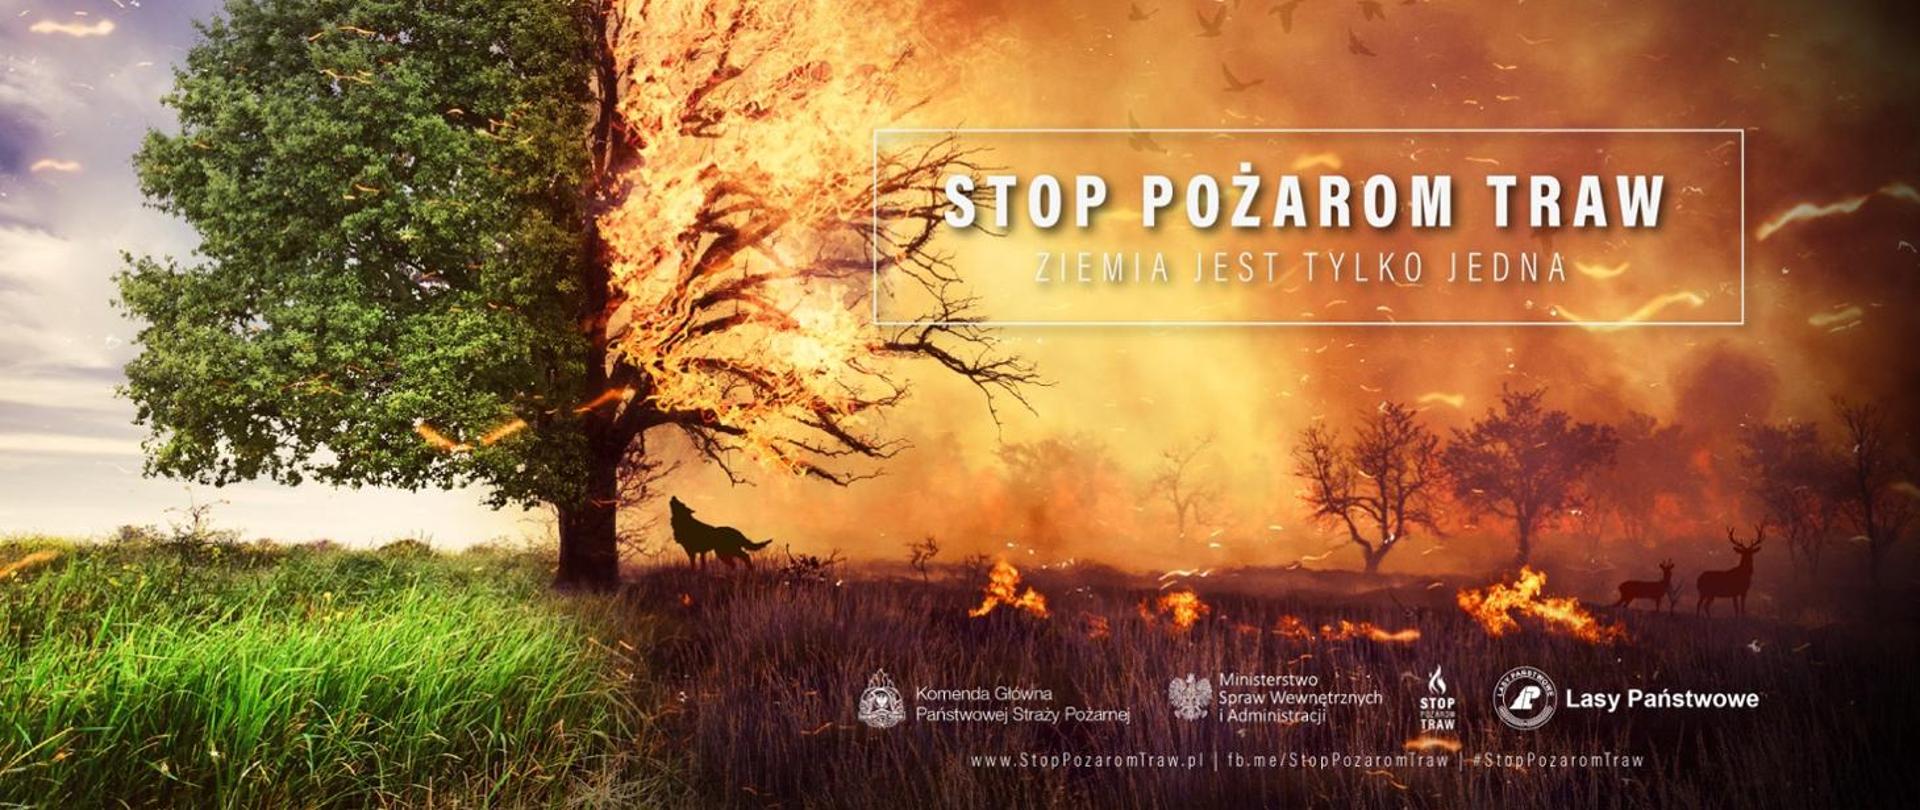 Plakat "Stop Pożarom traw"